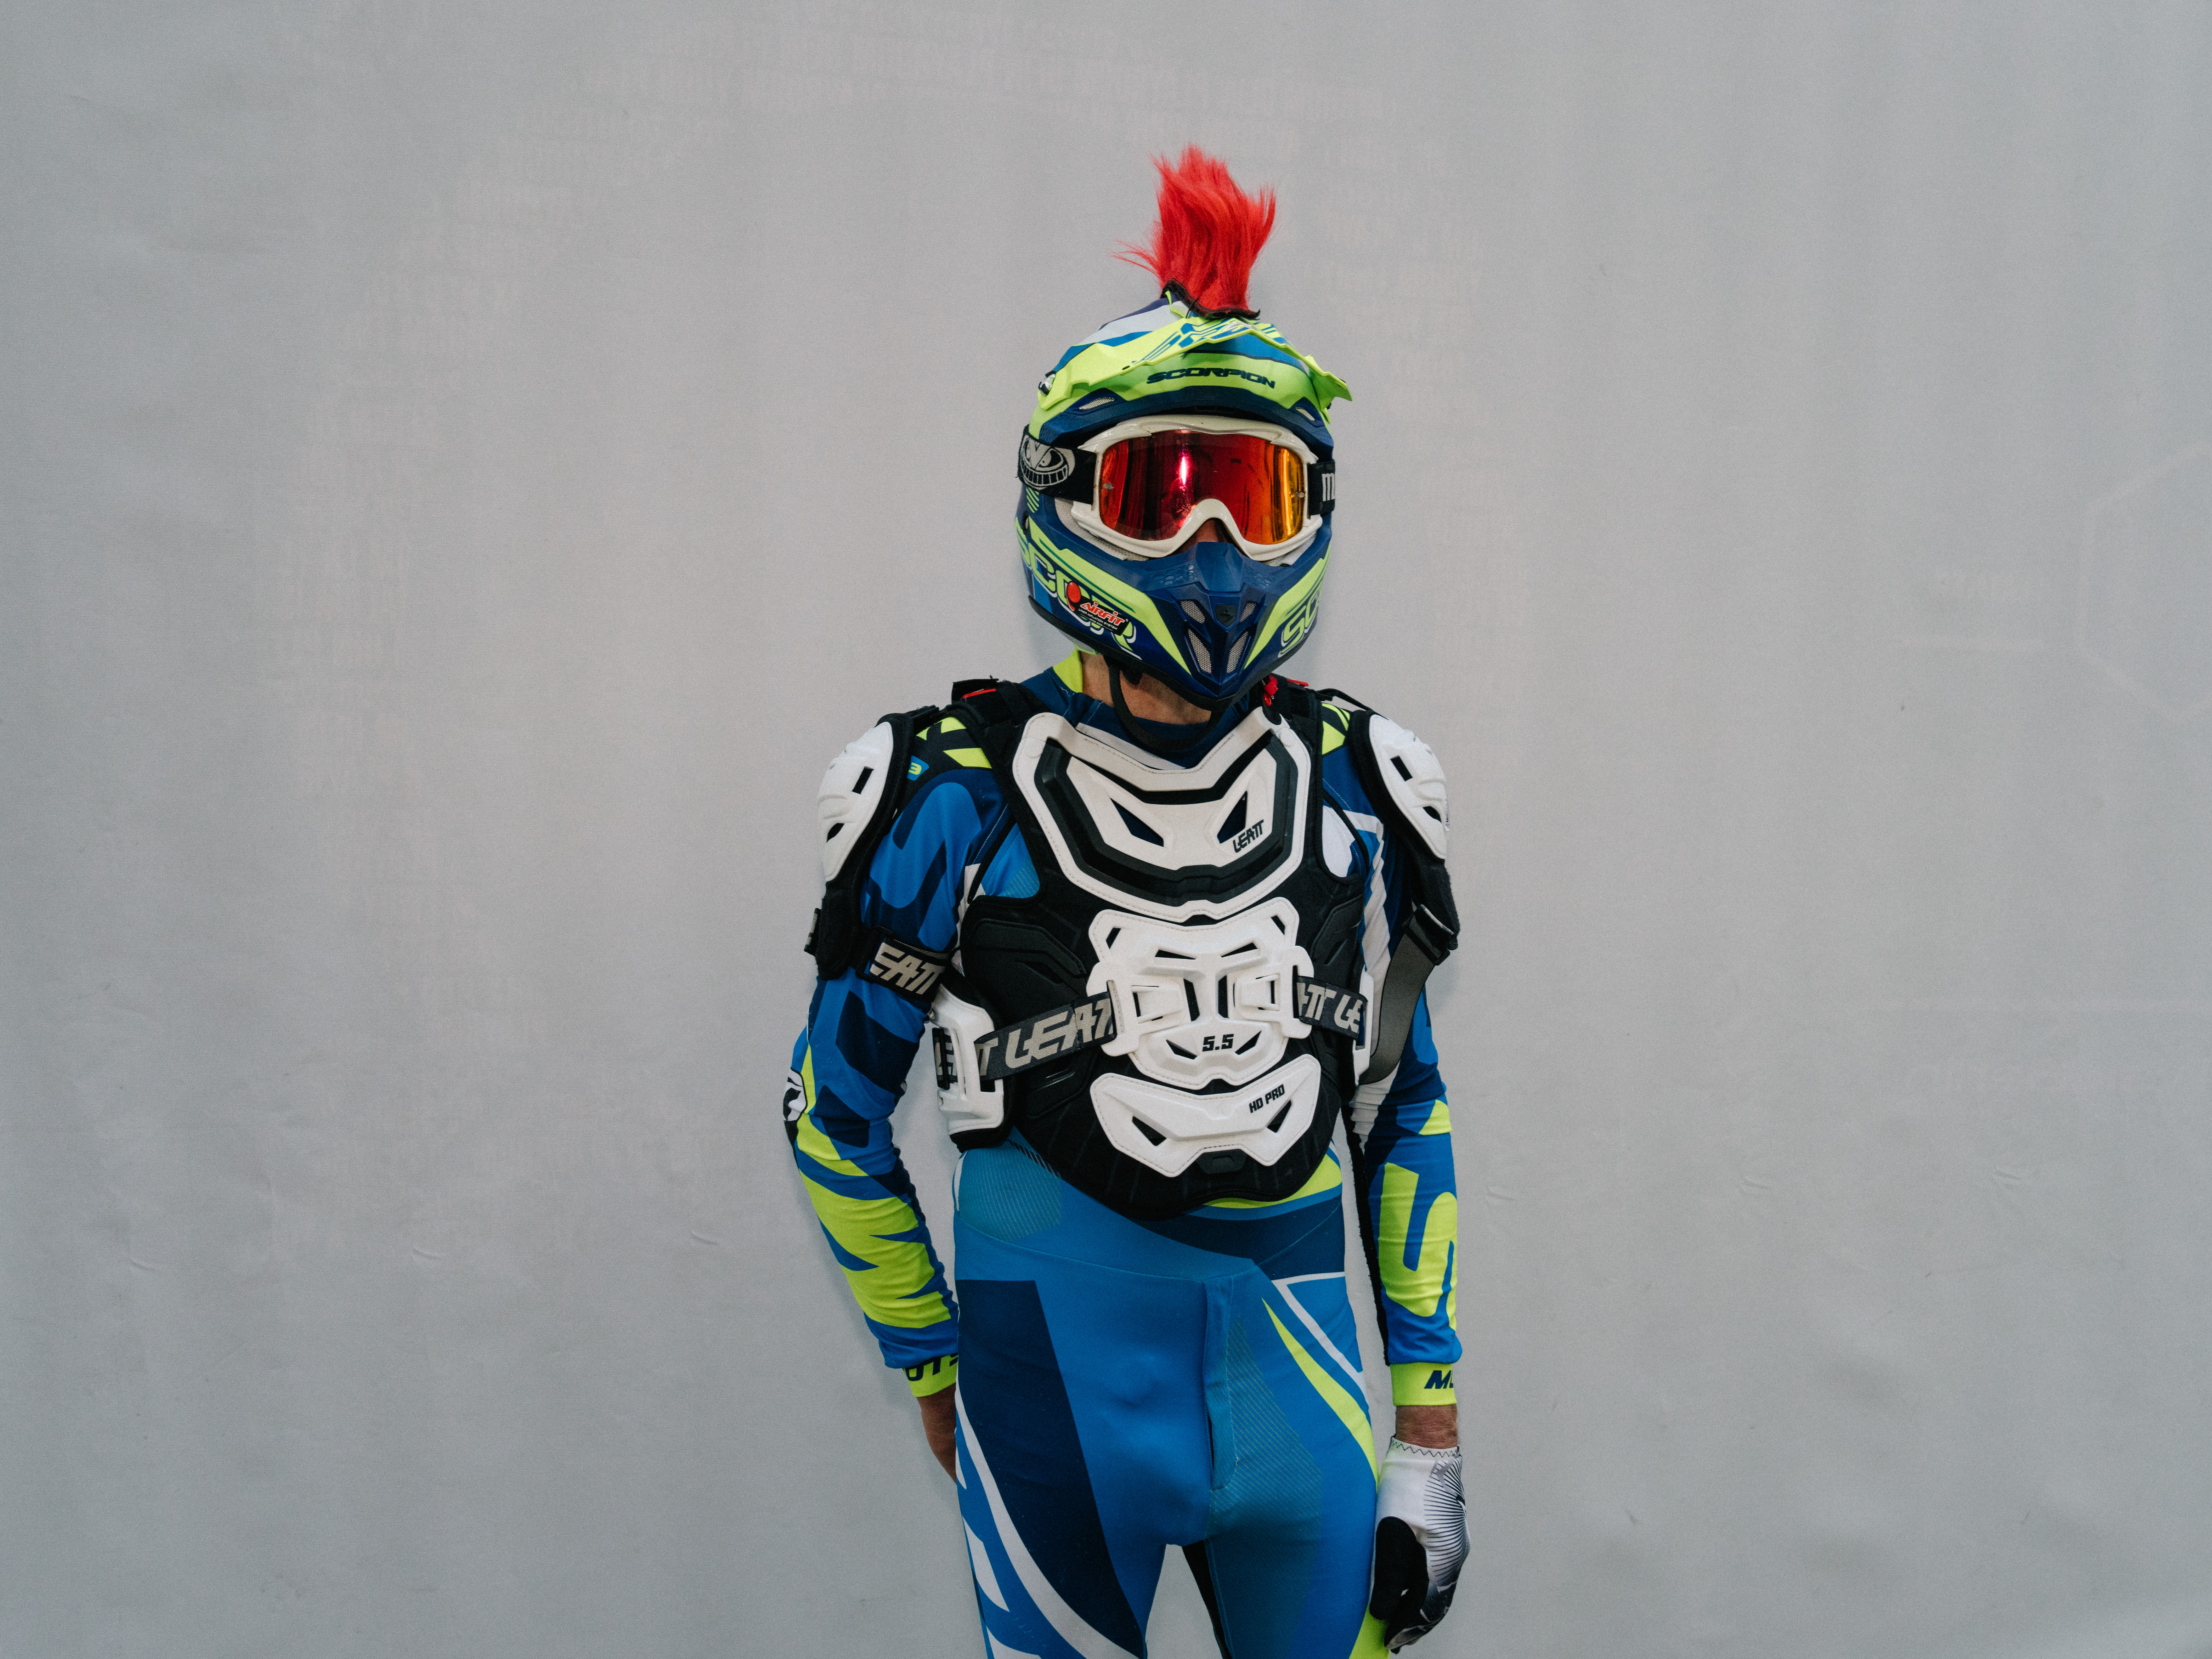 Ein Mann trägt als Fetisch-Outfit ein buntes Motocross-Outfit mit Helm